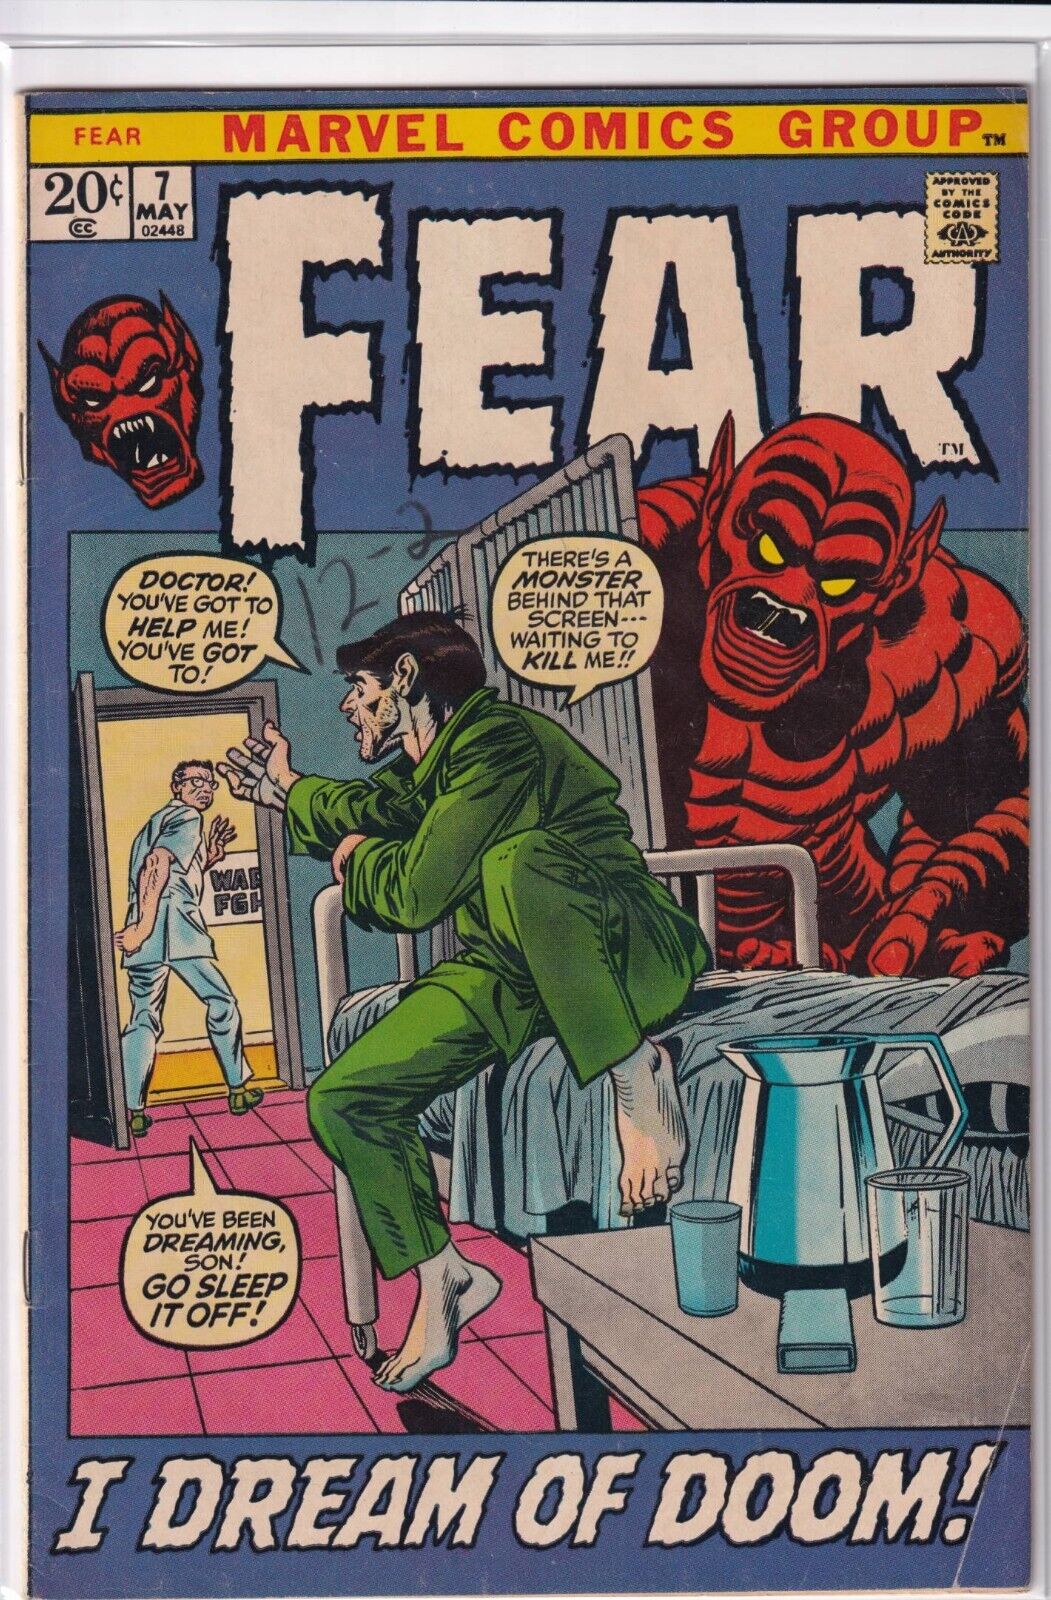 36411: Marvel Comics FEAR #7 Fine Plus Grade